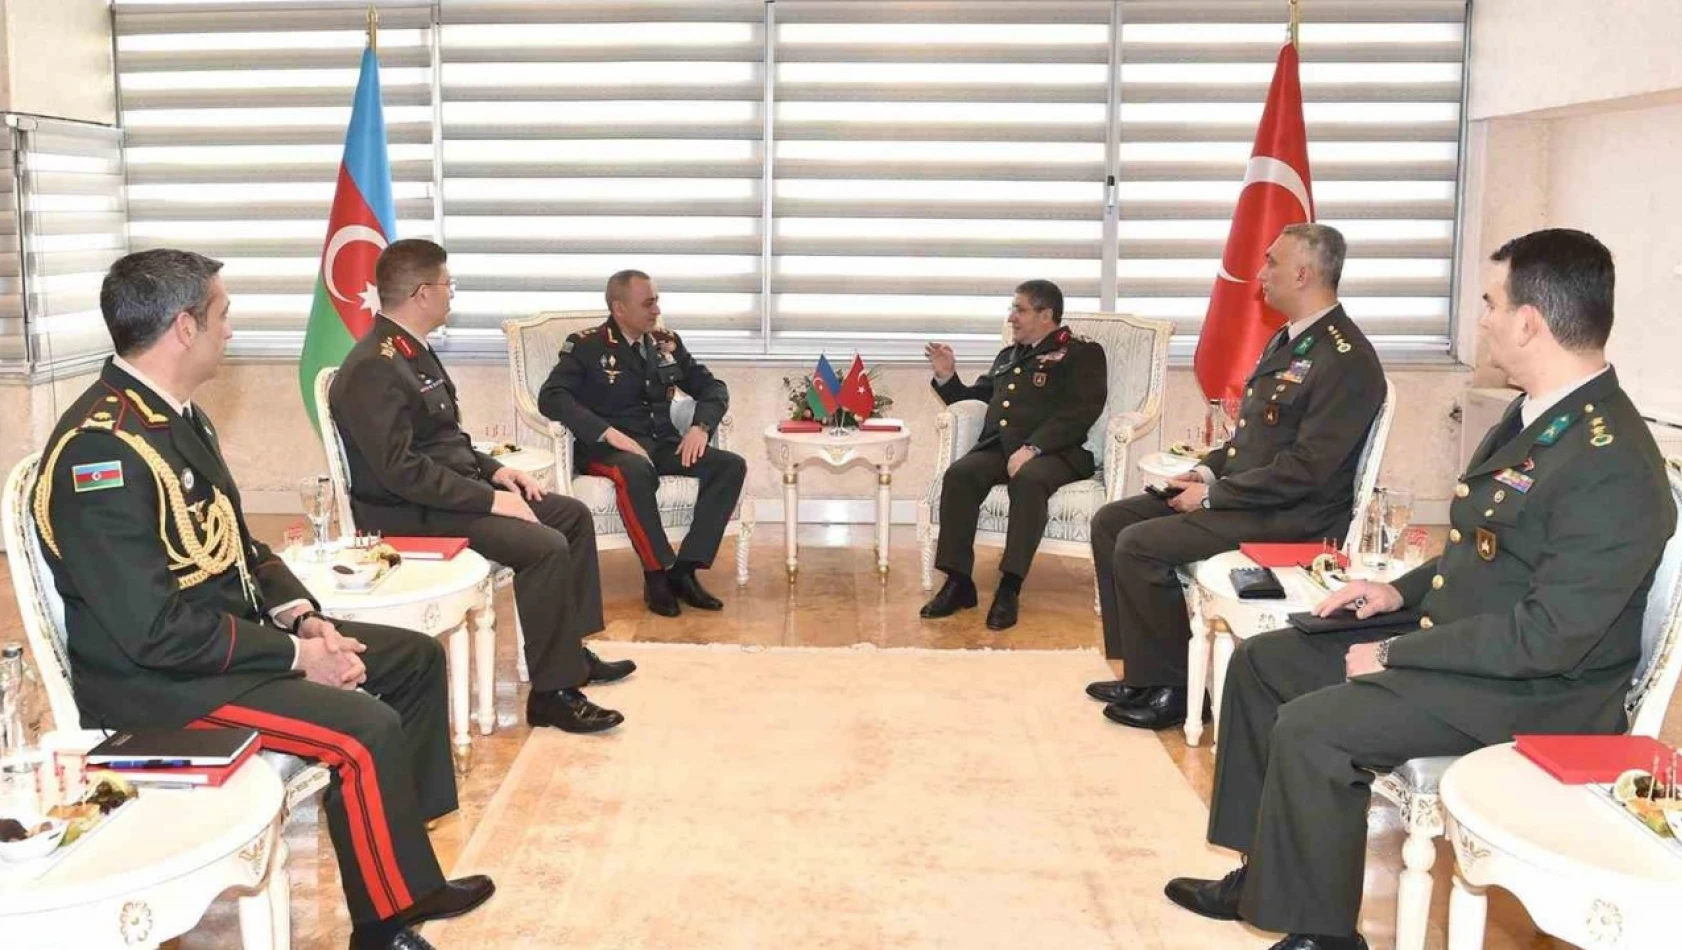 Kara Kuvvetleri Komutanı Bayraktaroğlu, Azerbaycanlı mevkidaşı ile bir araya geldi